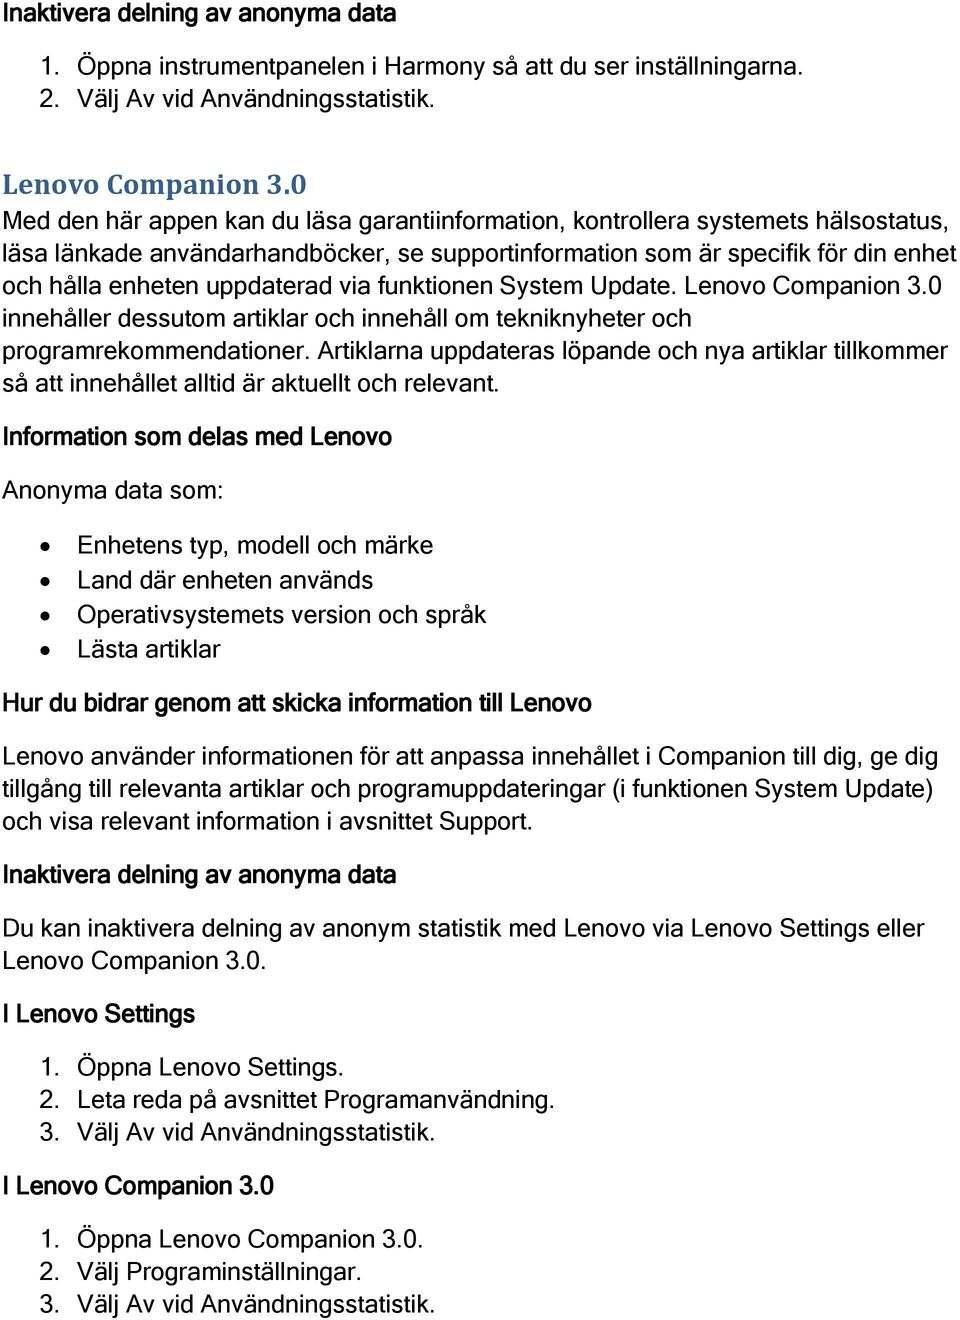 uppdaterad via funktionen System Update. Lenovo Companion 3.0 innehåller dessutom artiklar och innehåll om tekniknyheter och programrekommendationer.